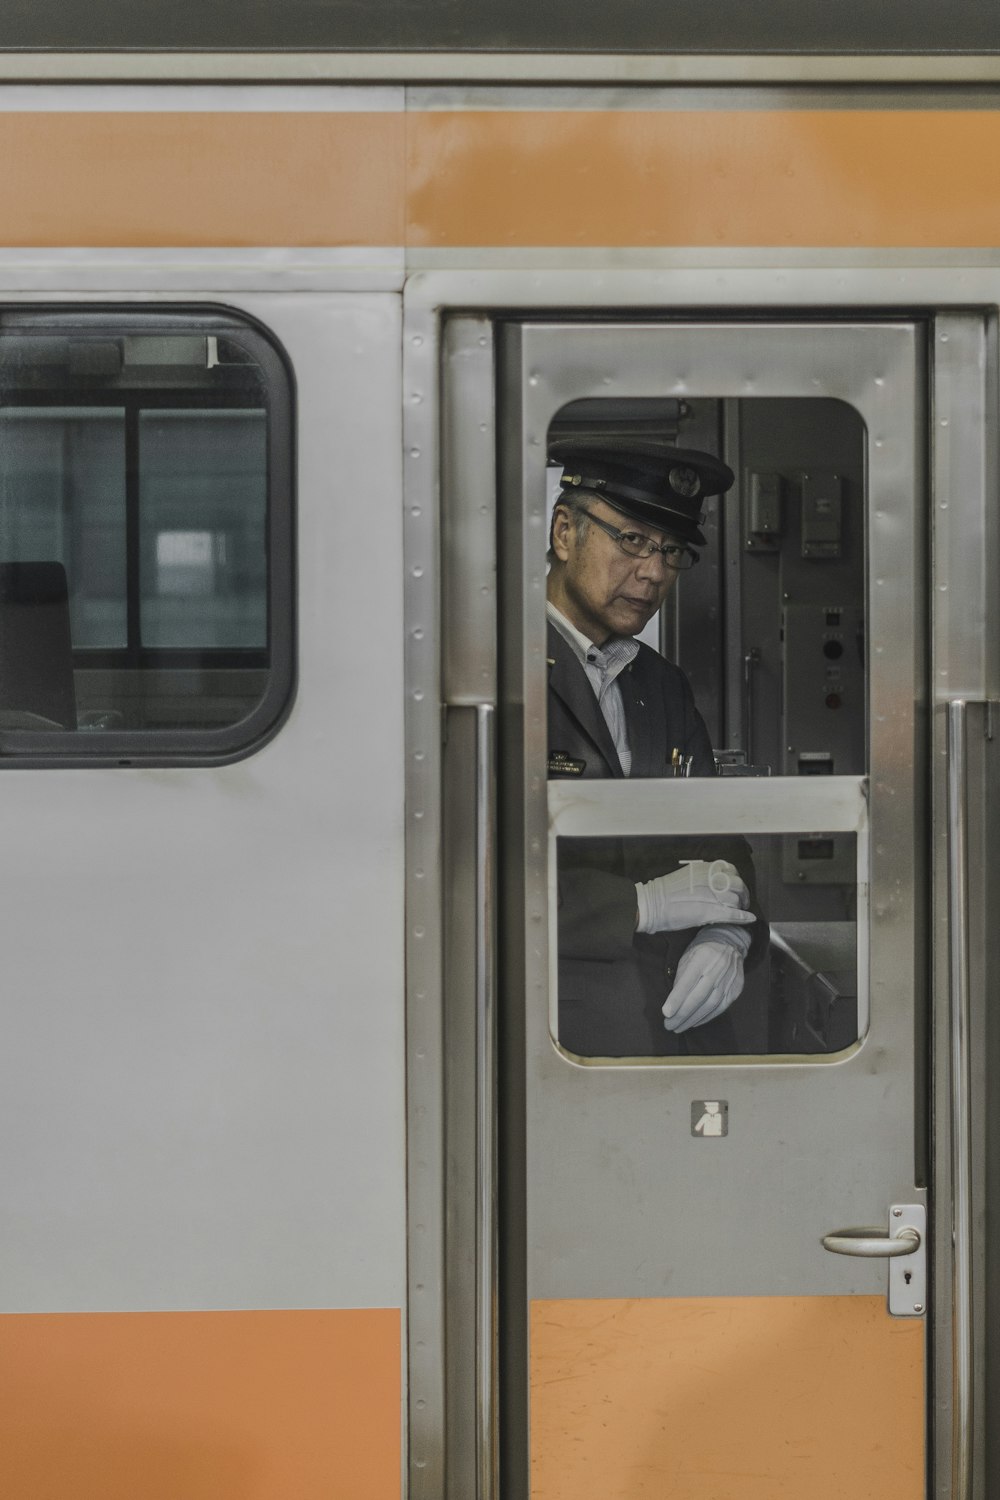 man wearing suit jacket inside train